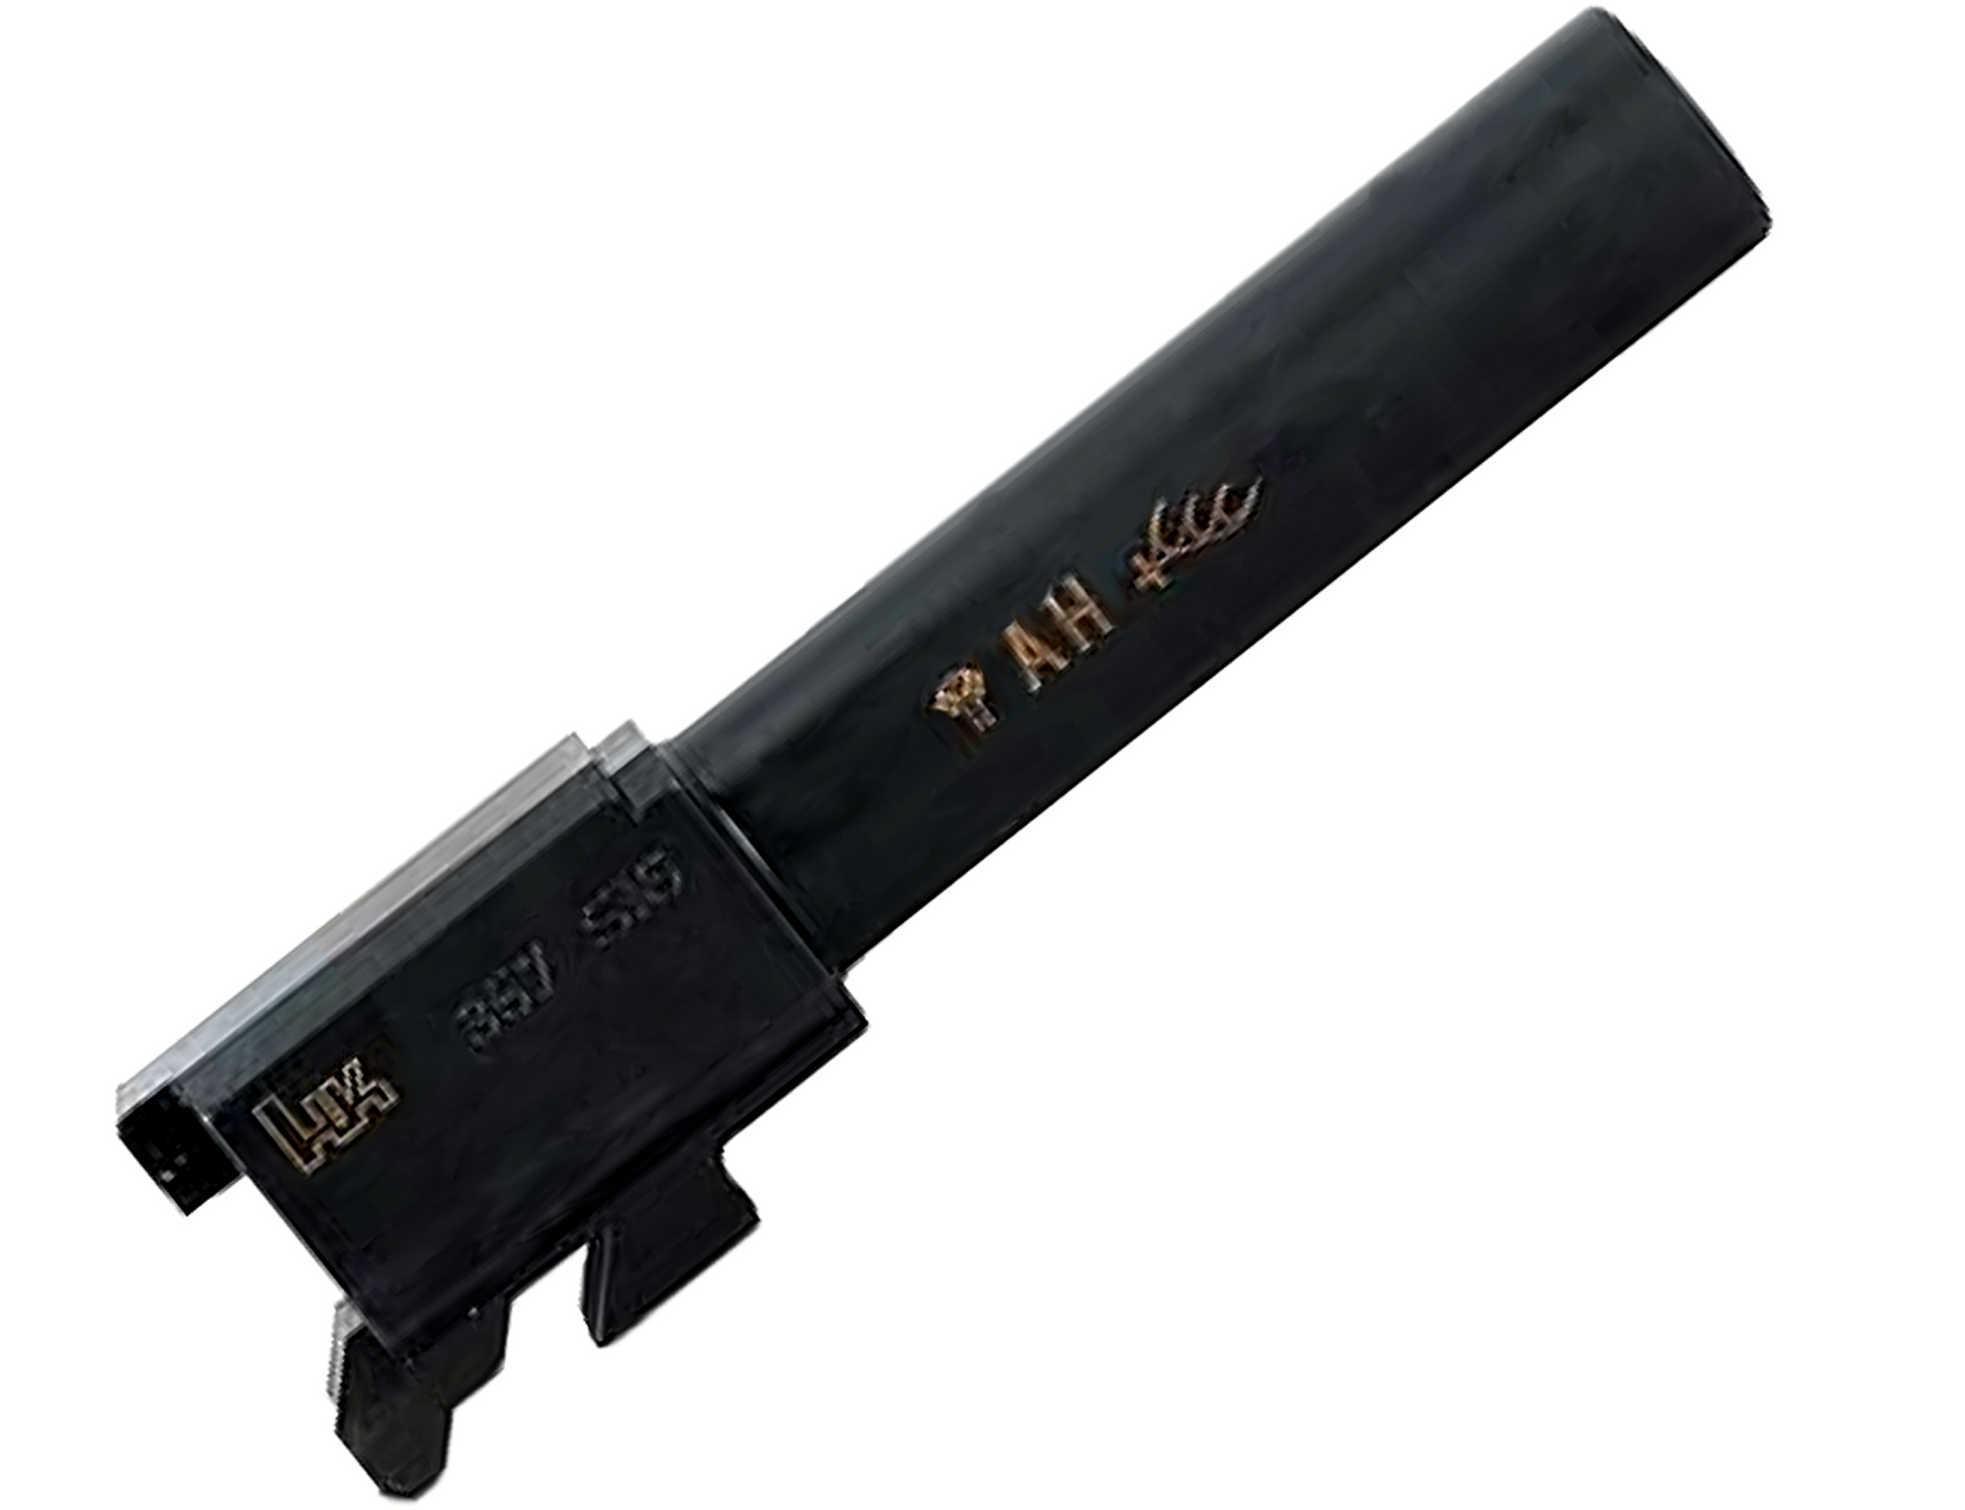 HK Barrel 357 Sig 3.58" Fits USP Compact 217813